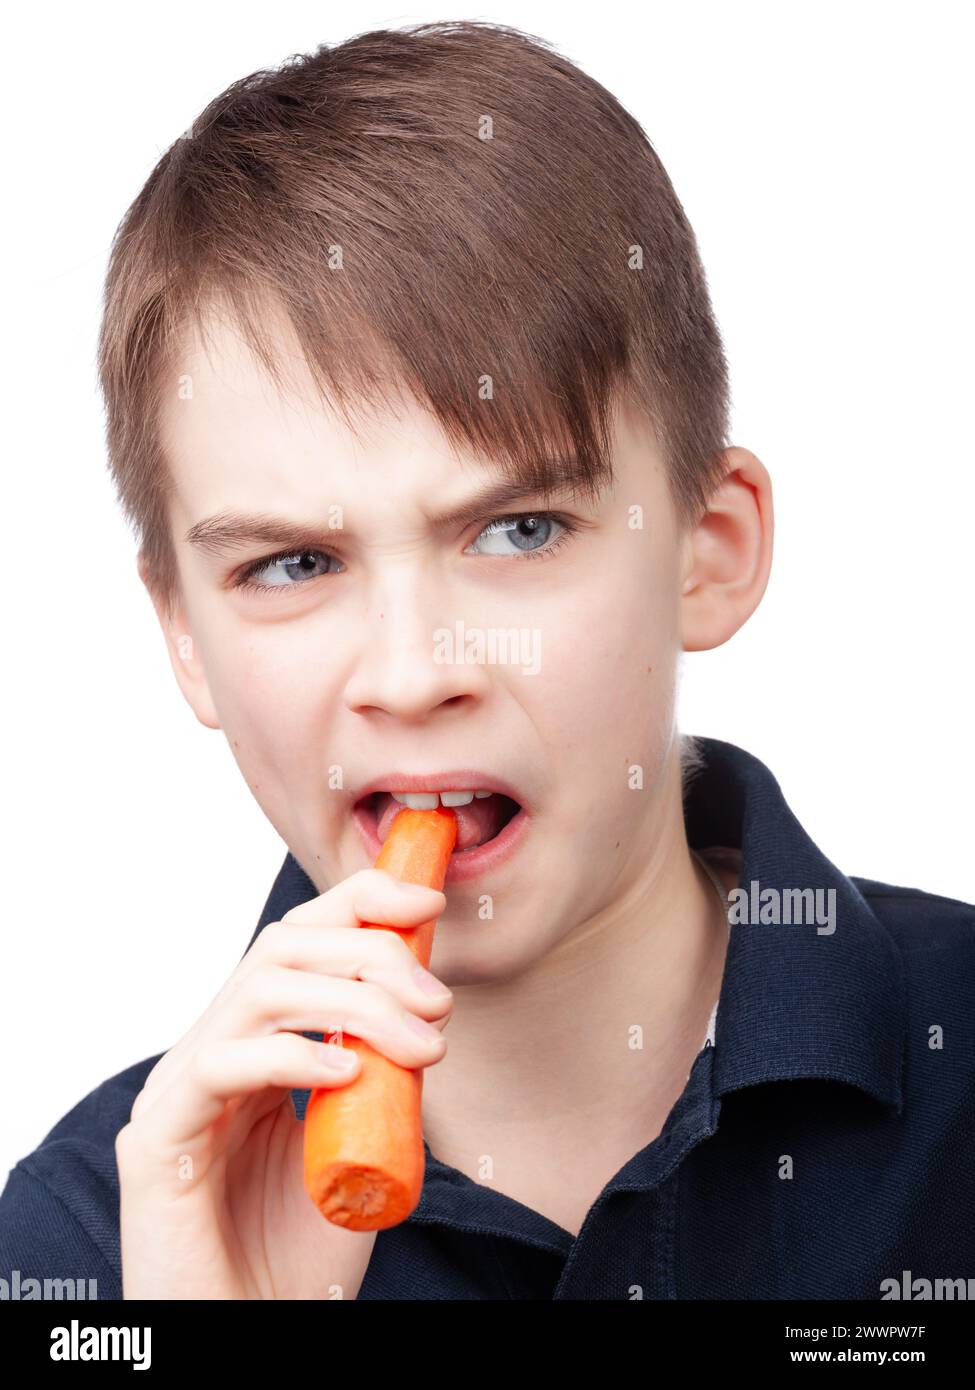 Un ragazzo che indossa una polo blu grimaces mentre morde una carota che mostra una reazione al gusto poco attraente. Ritratto in studio su sfondo bianco Foto Stock